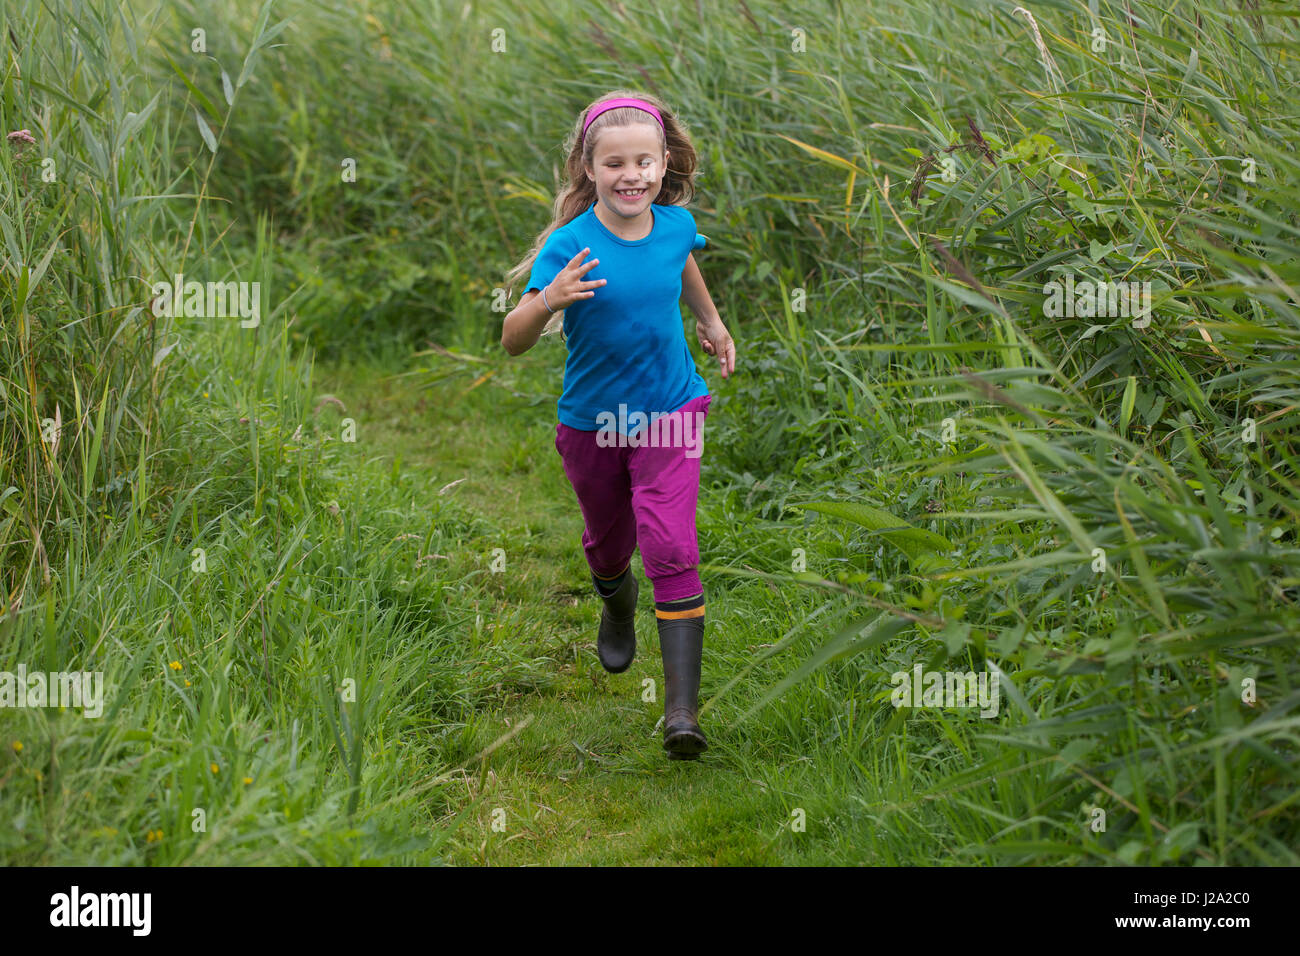 Une petite fille court sur un chemin à travers des reed, modèle publié Banque D'Images